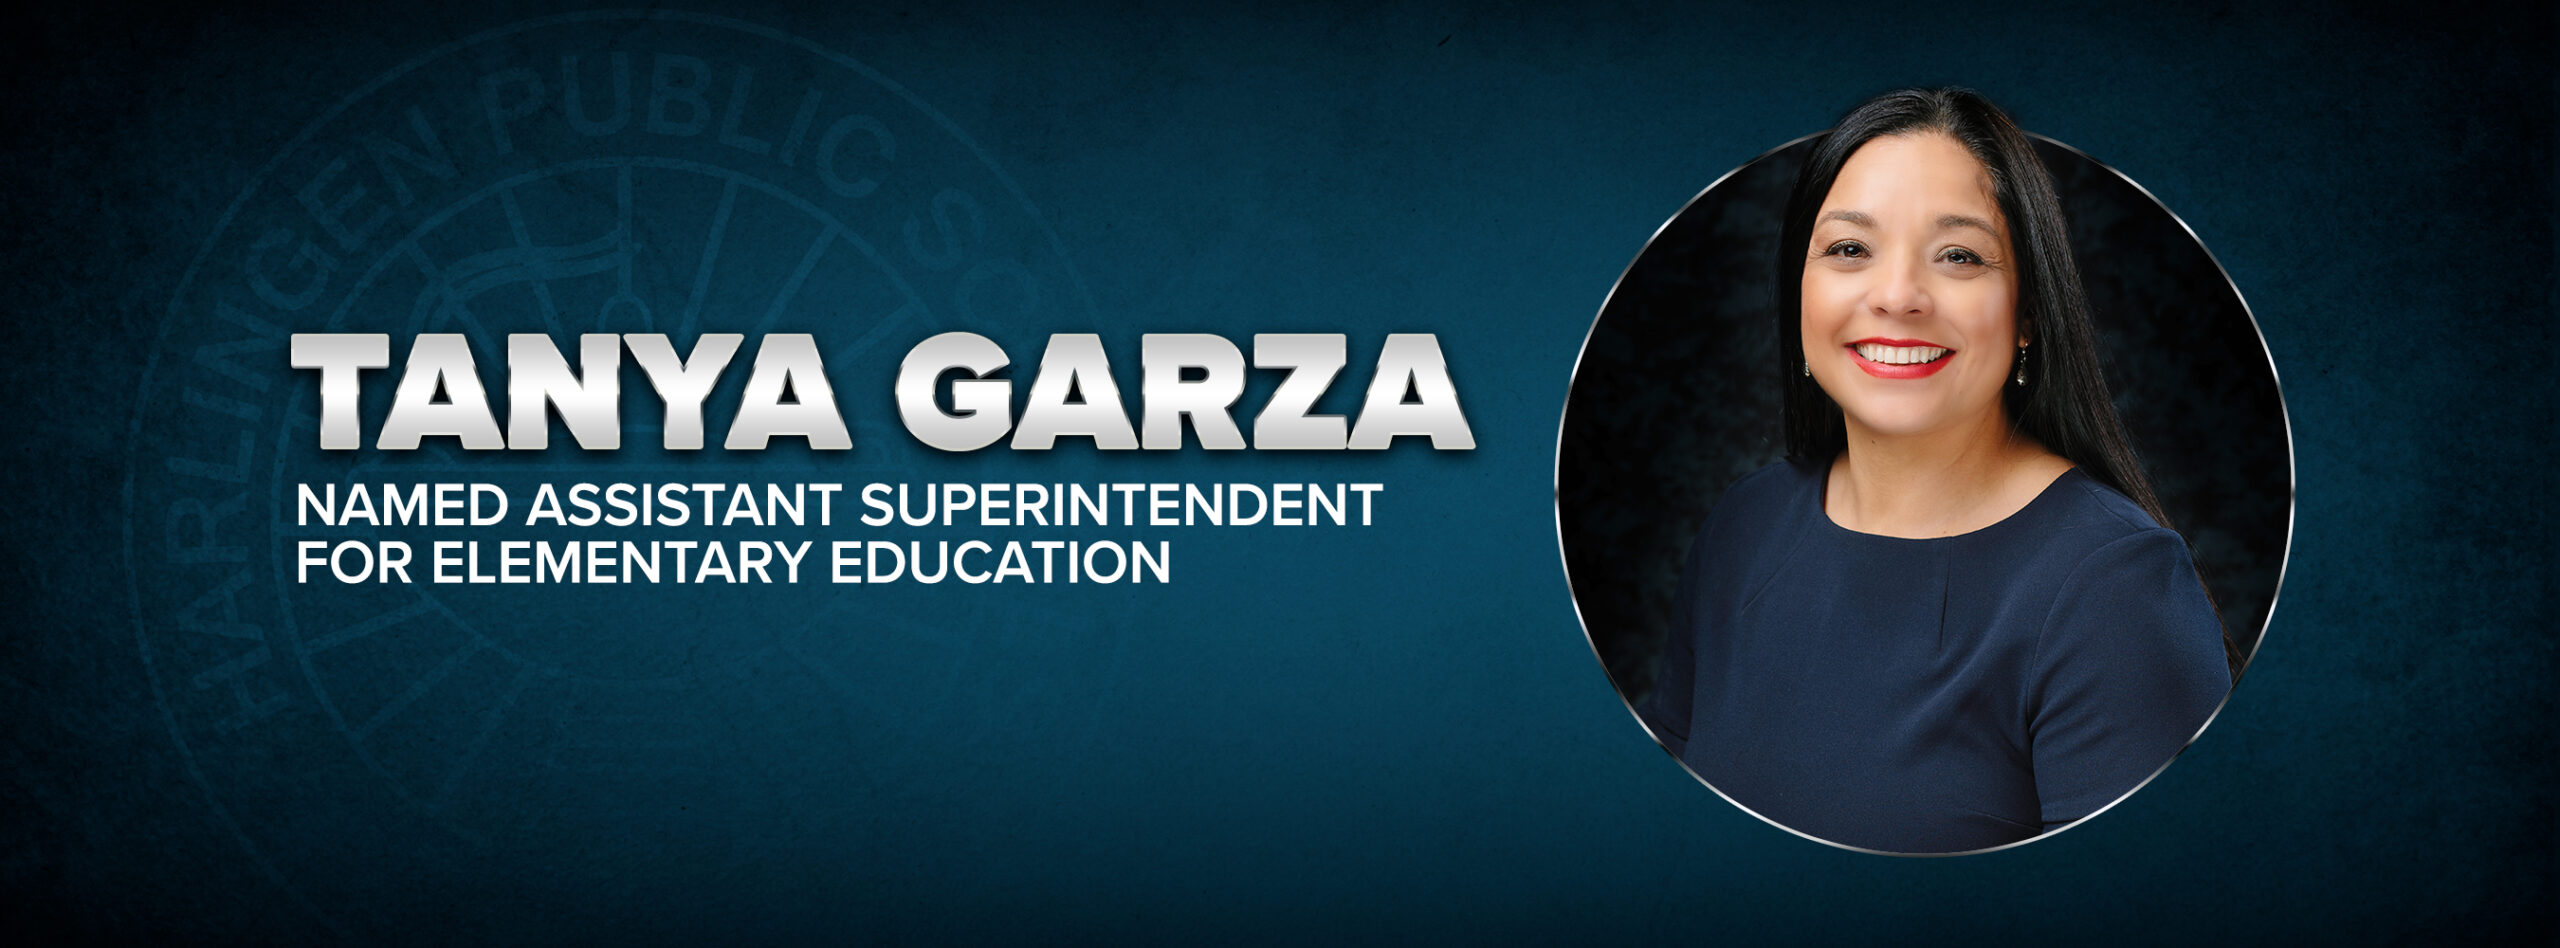 Tanya Garza ha sido nombrada Superintendente Asistente de Educación Primaria.